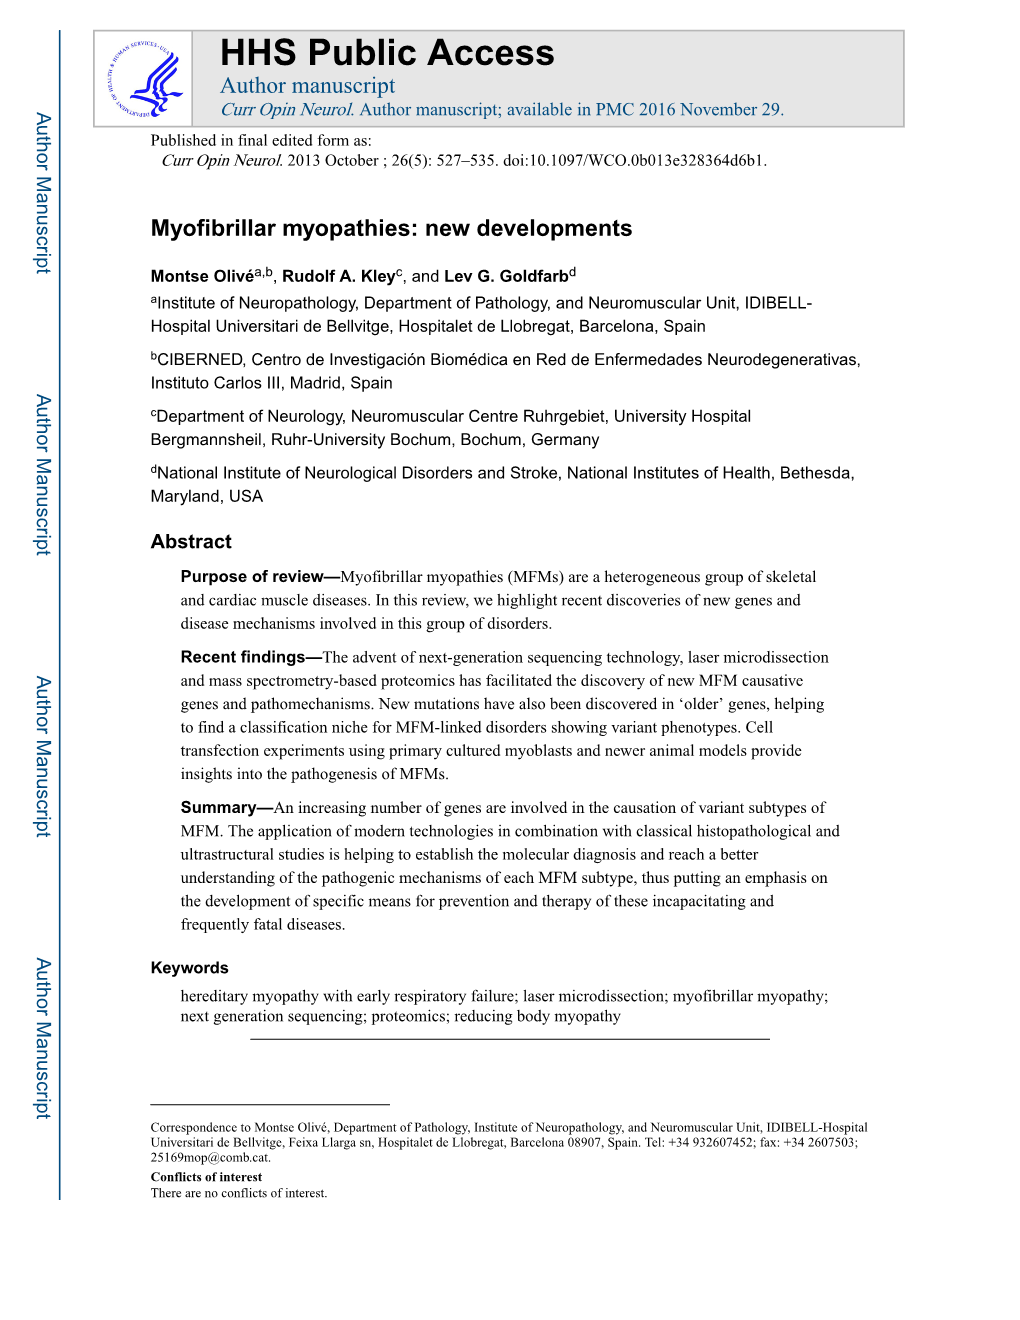 Myofibrillar Myopathies: New Developments